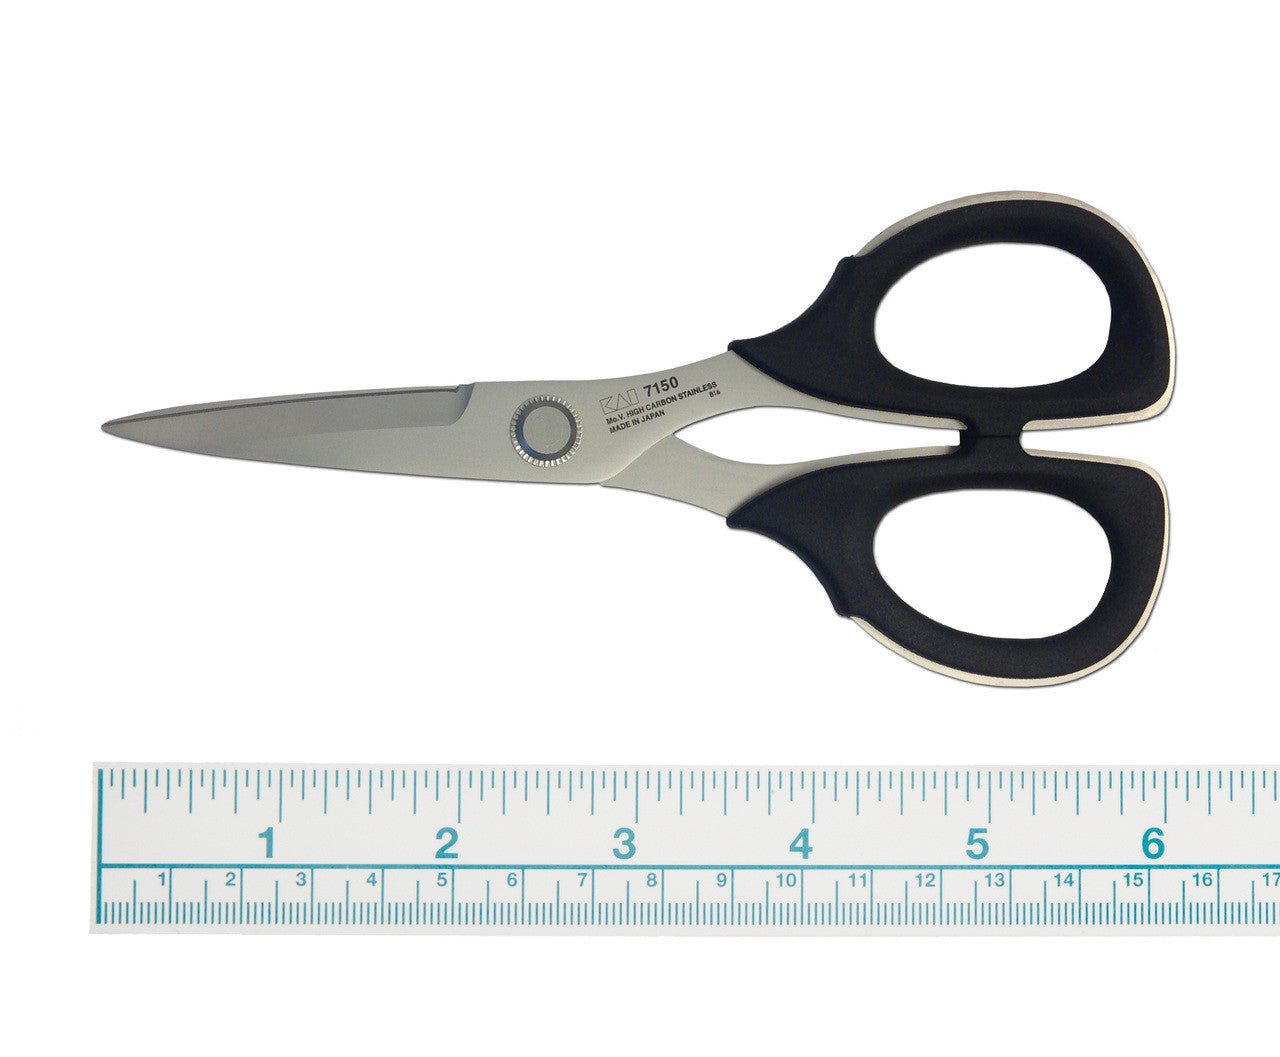 Kai 6" Professional Scissors